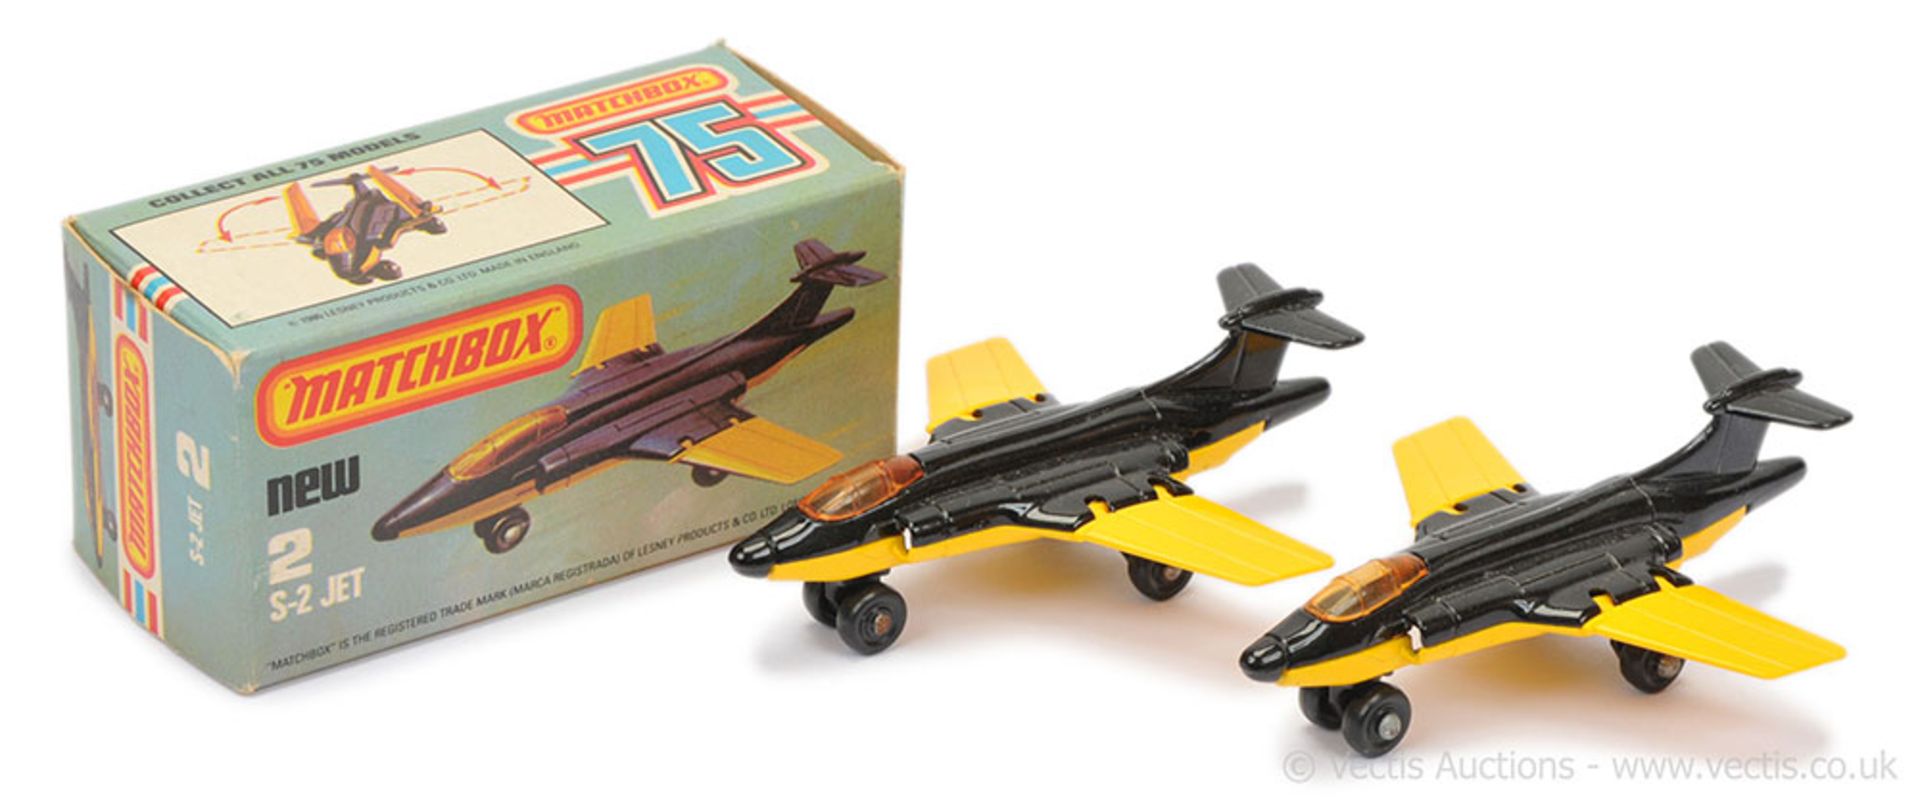 Matchbox Superfast 2 x 2d S-2 Jet (Blackburn